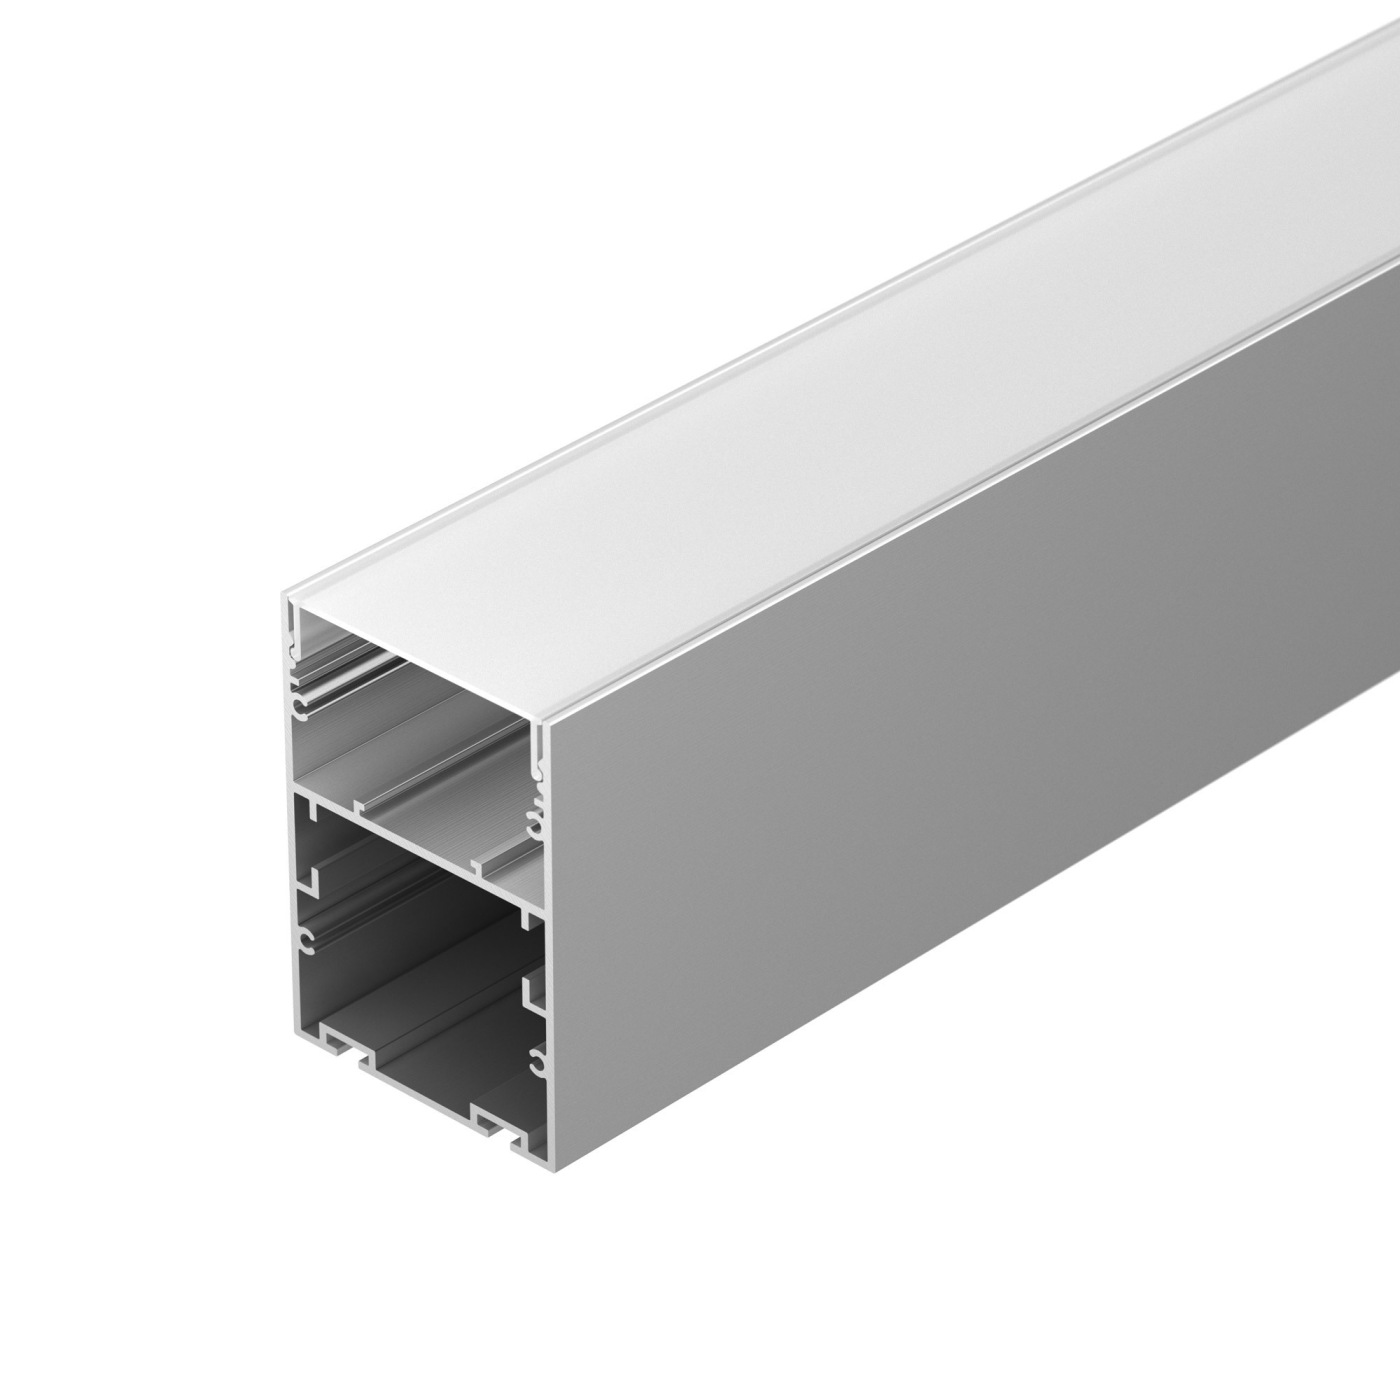 Профиль ARH-LINE-6085-2000 ANOD профиль алюминиевый накладной подвесной с отсеком для бп серебро cab265